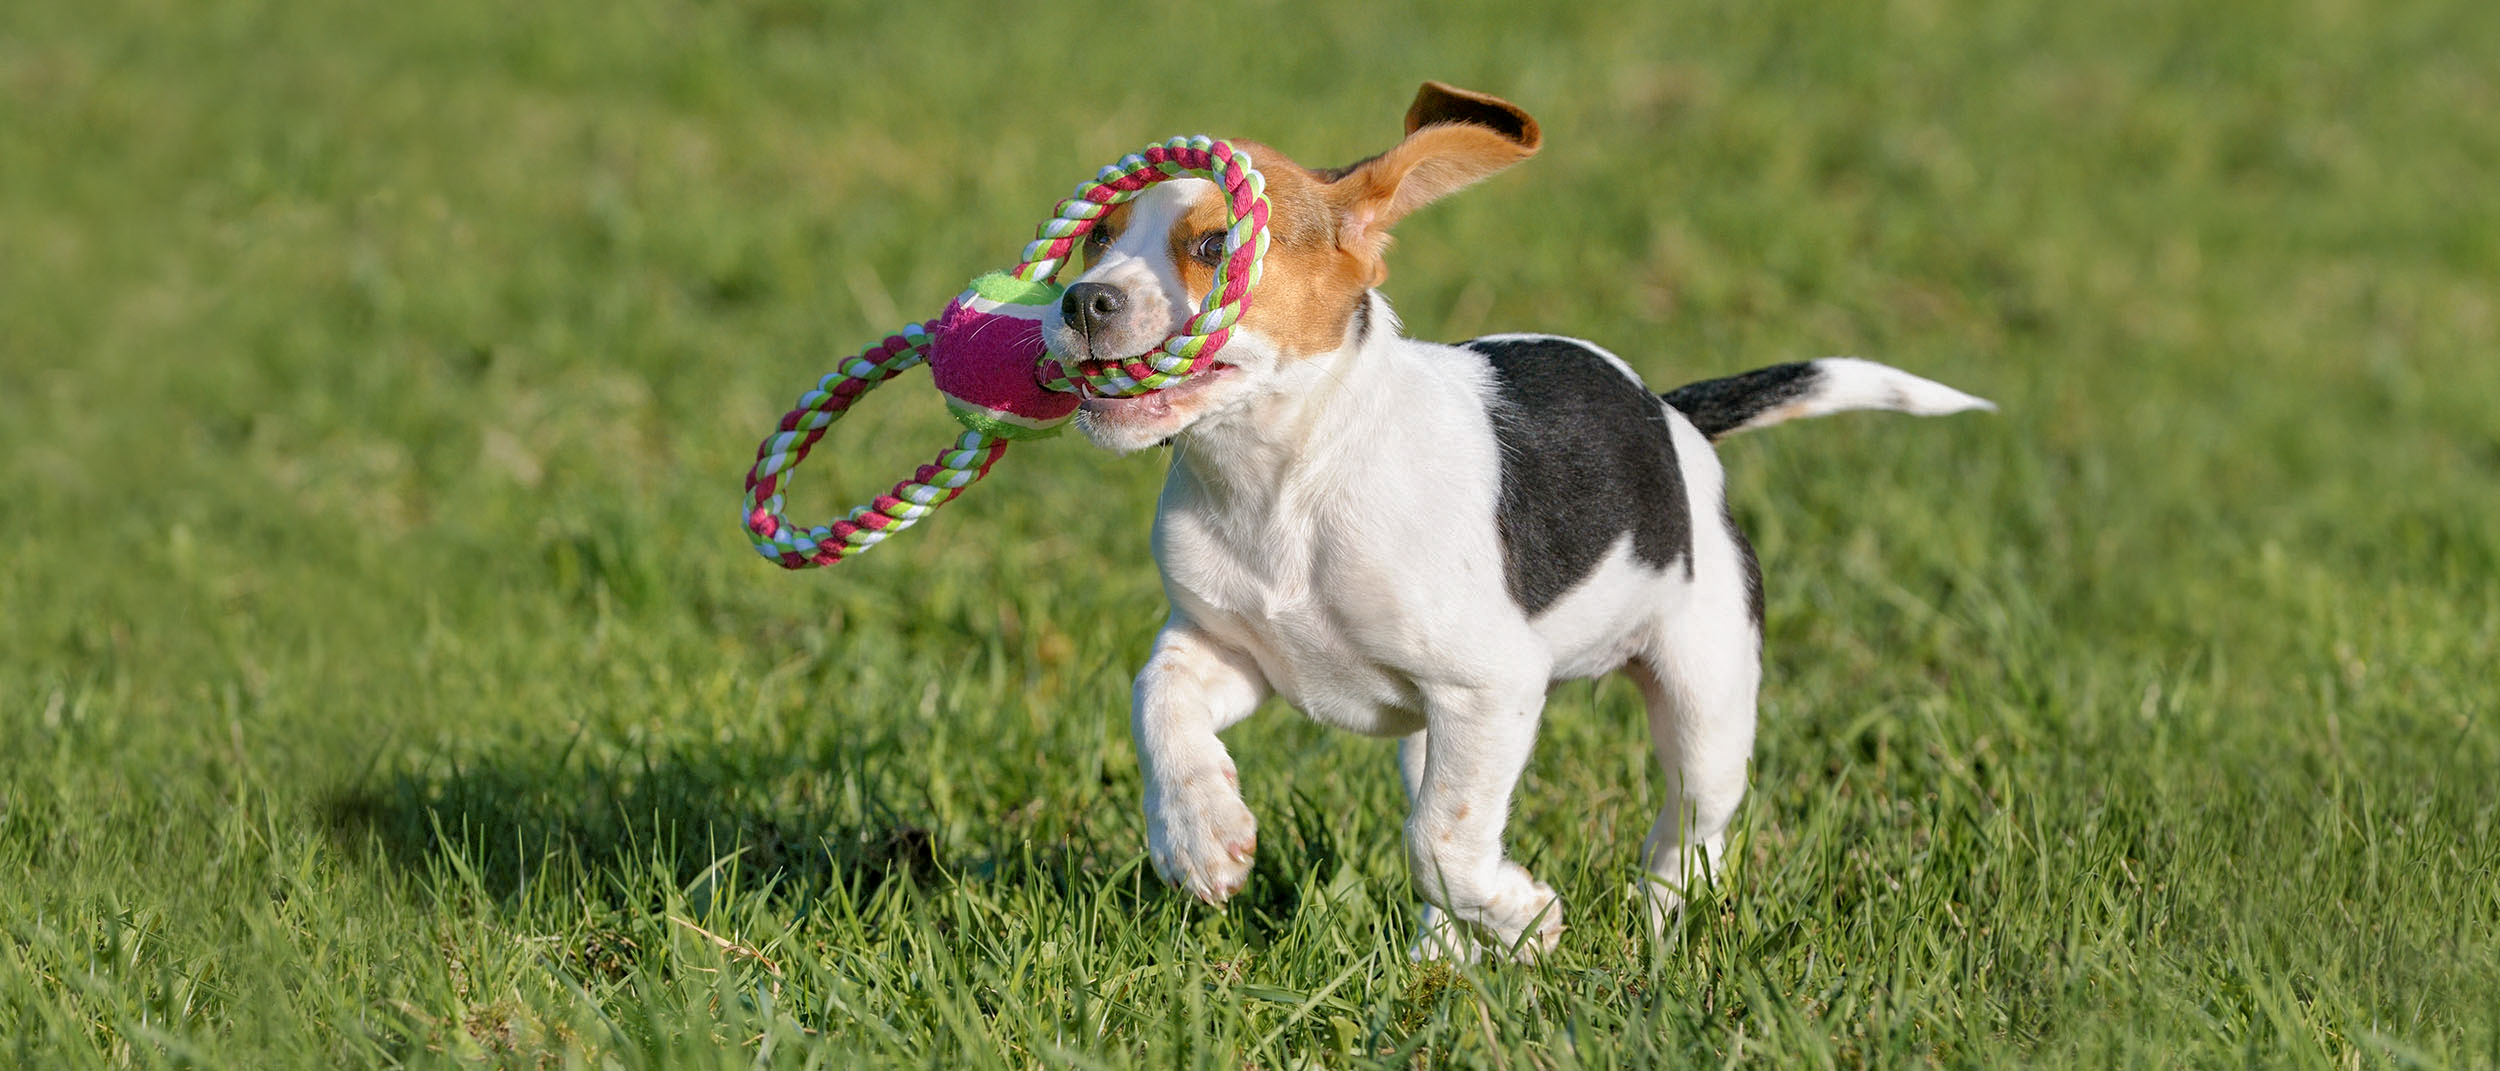 Ein Beagle-Welpe hat ein Seil-Spielzeug im Maul und läuft über Rasen.